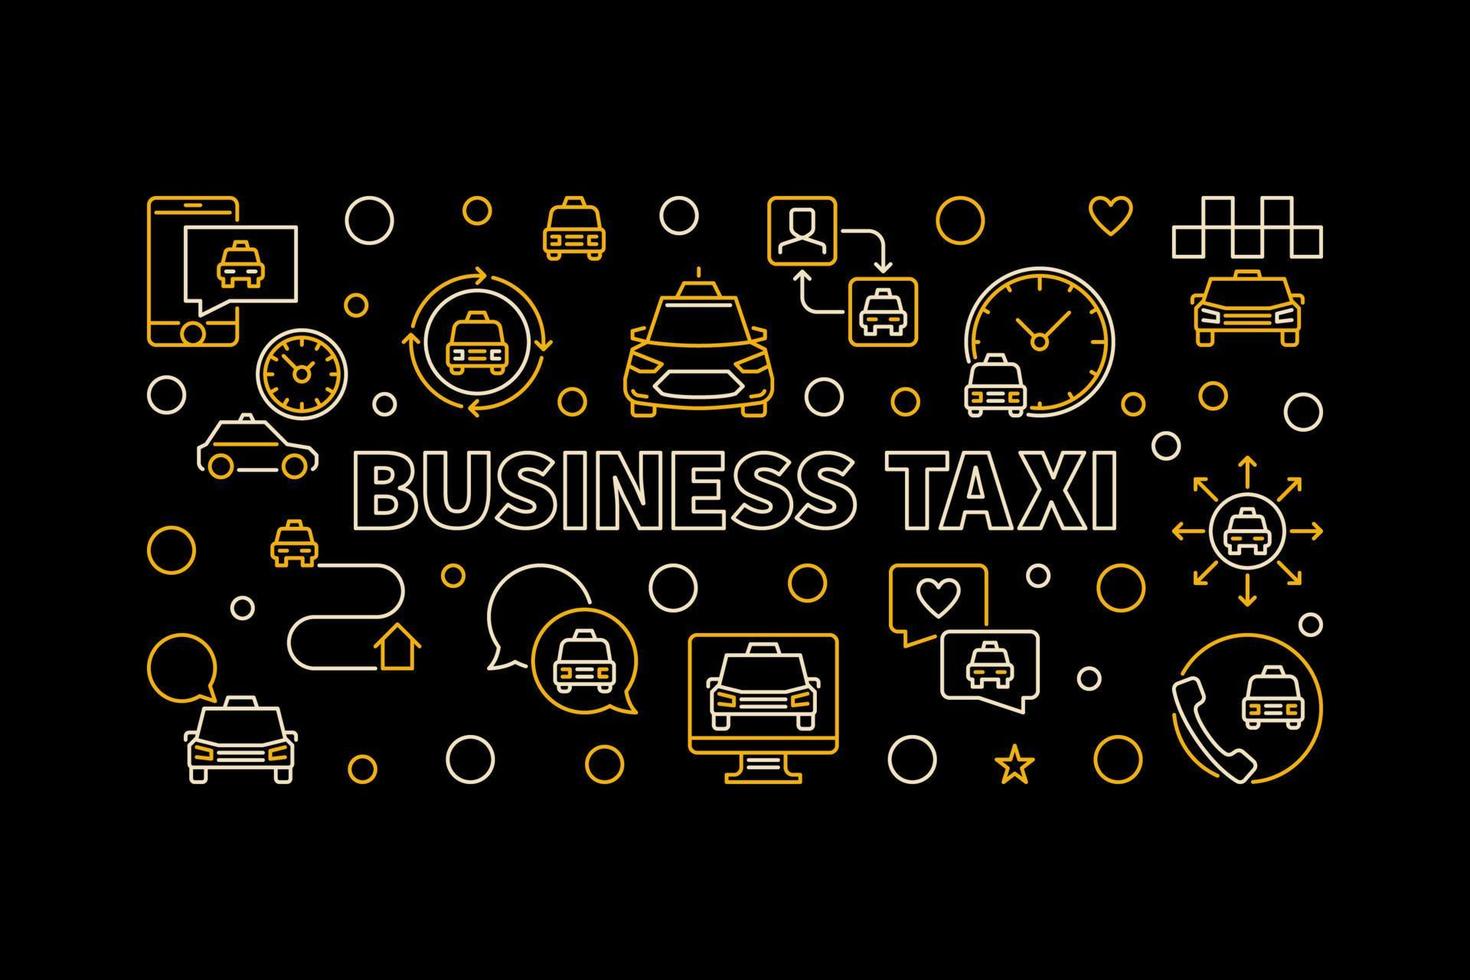 banner de contorno horizontal creativo de taxi de negocios de vector